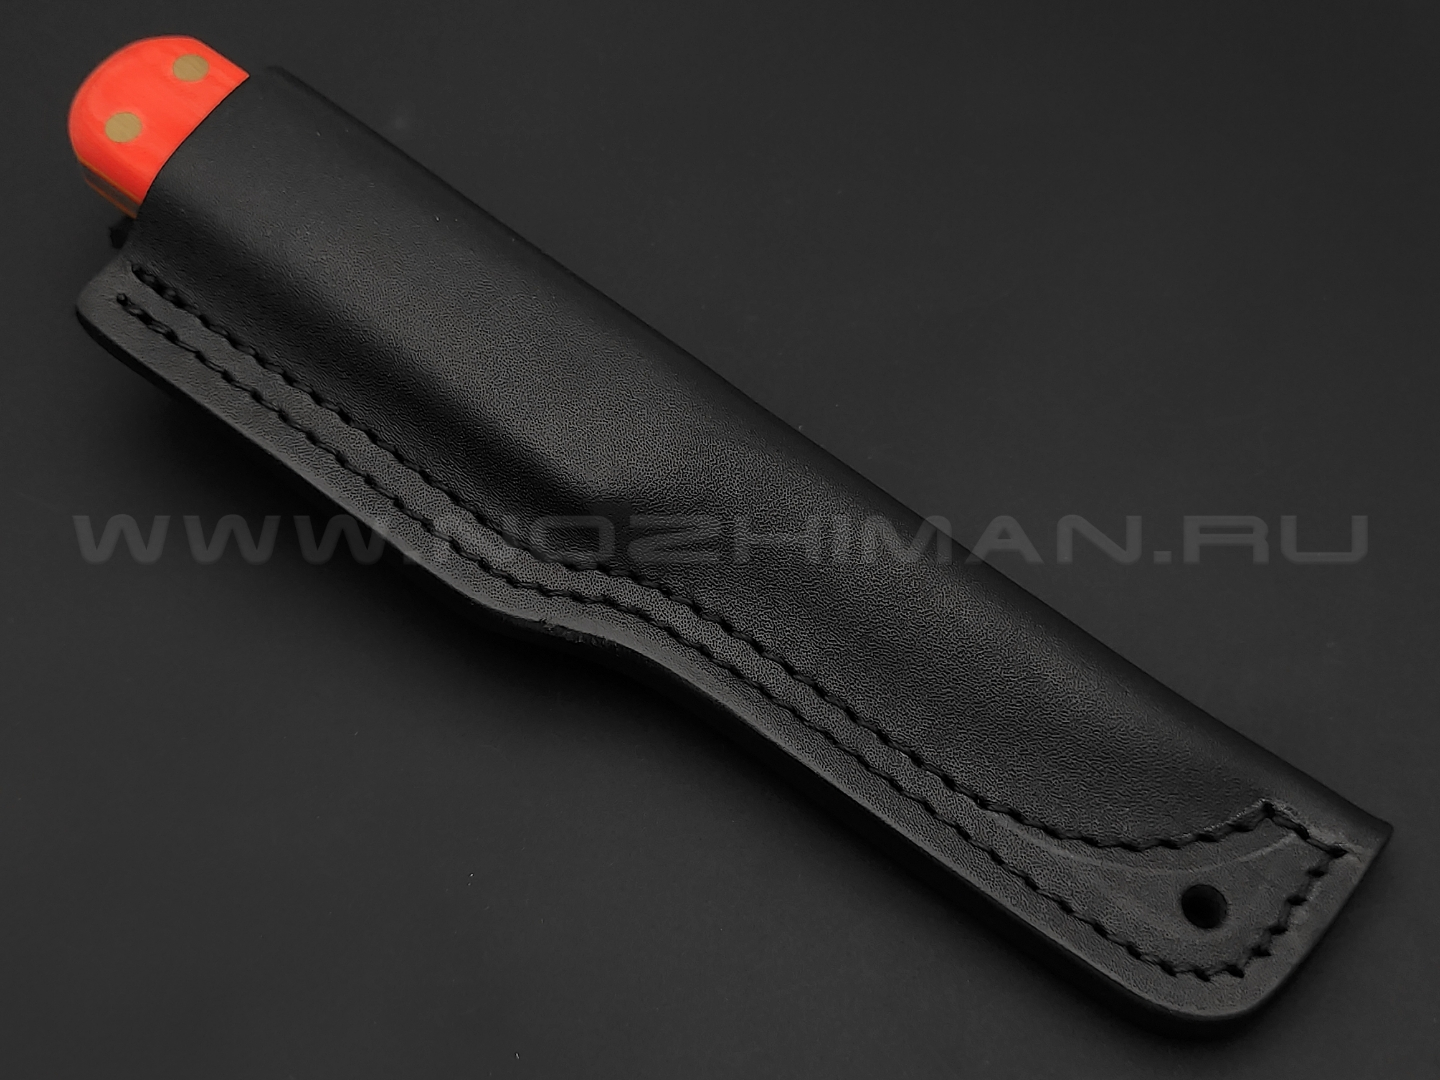 Нож Burlax Mini-Fin BX0011 сталь Aus10Co, рукоять оранжевая микарта